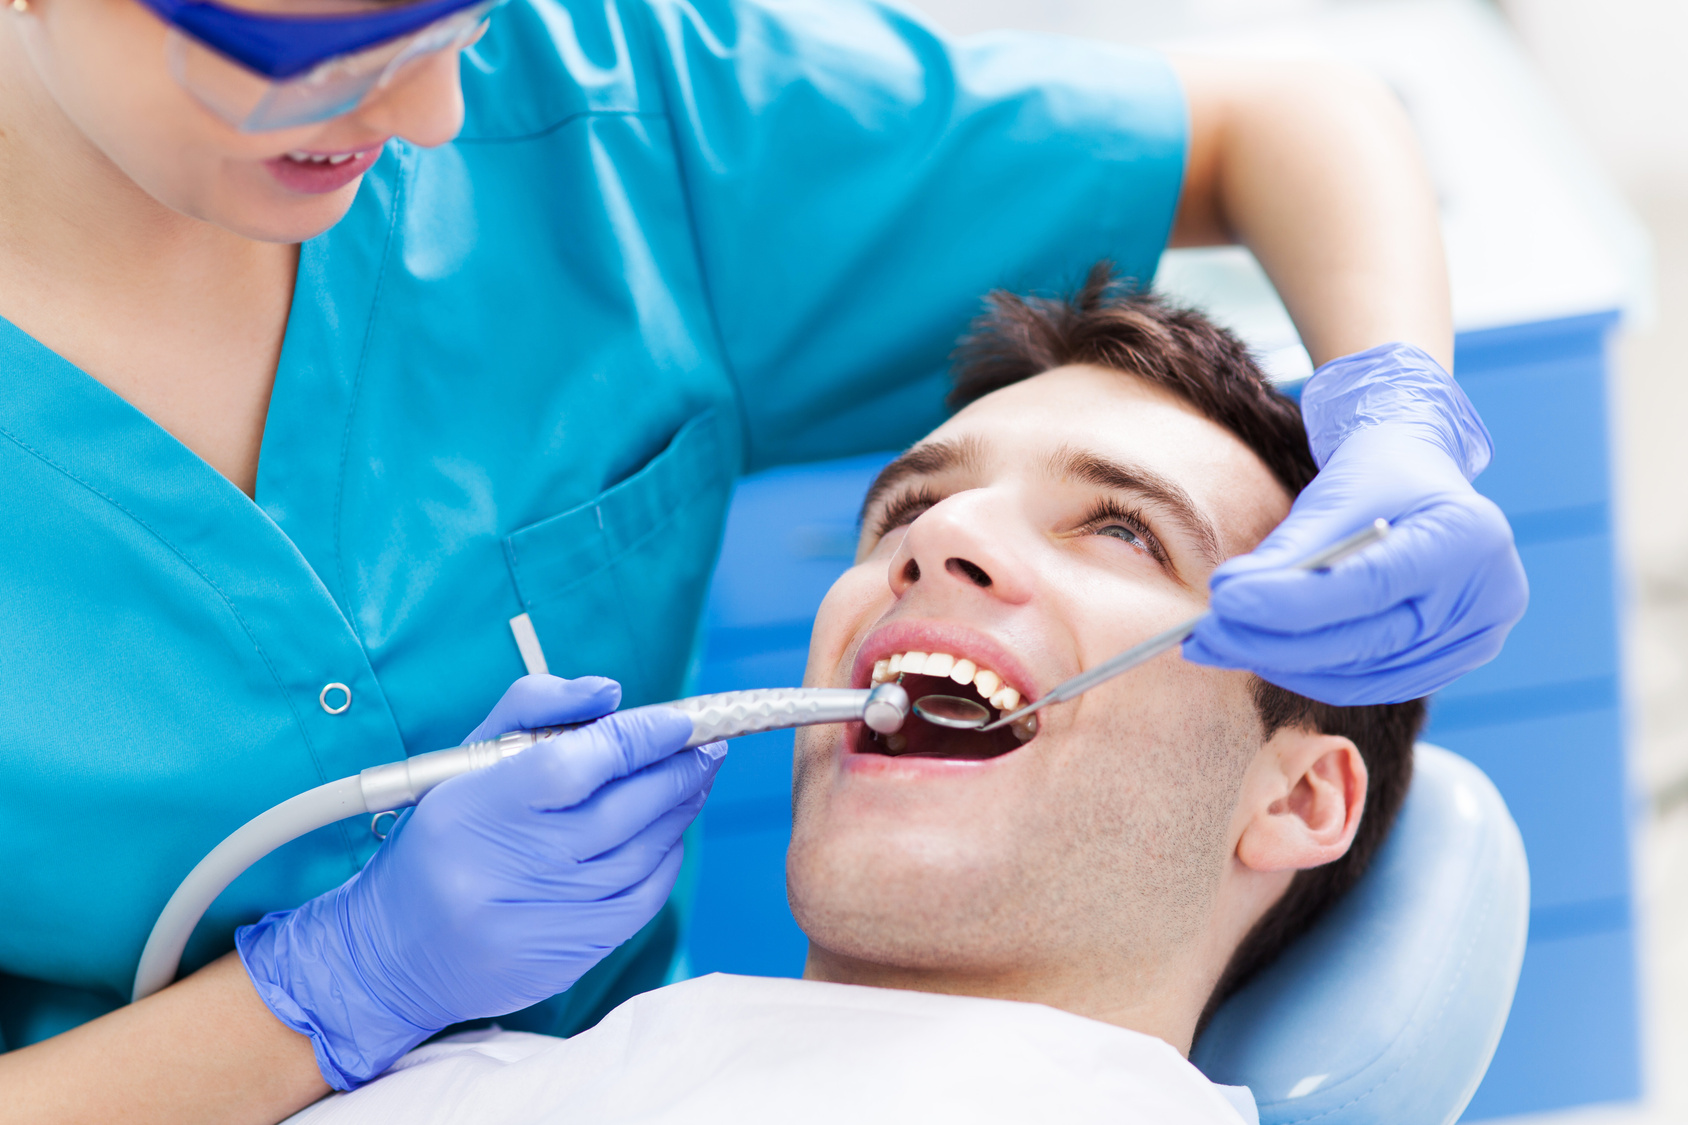 Global Dental Services Market demand